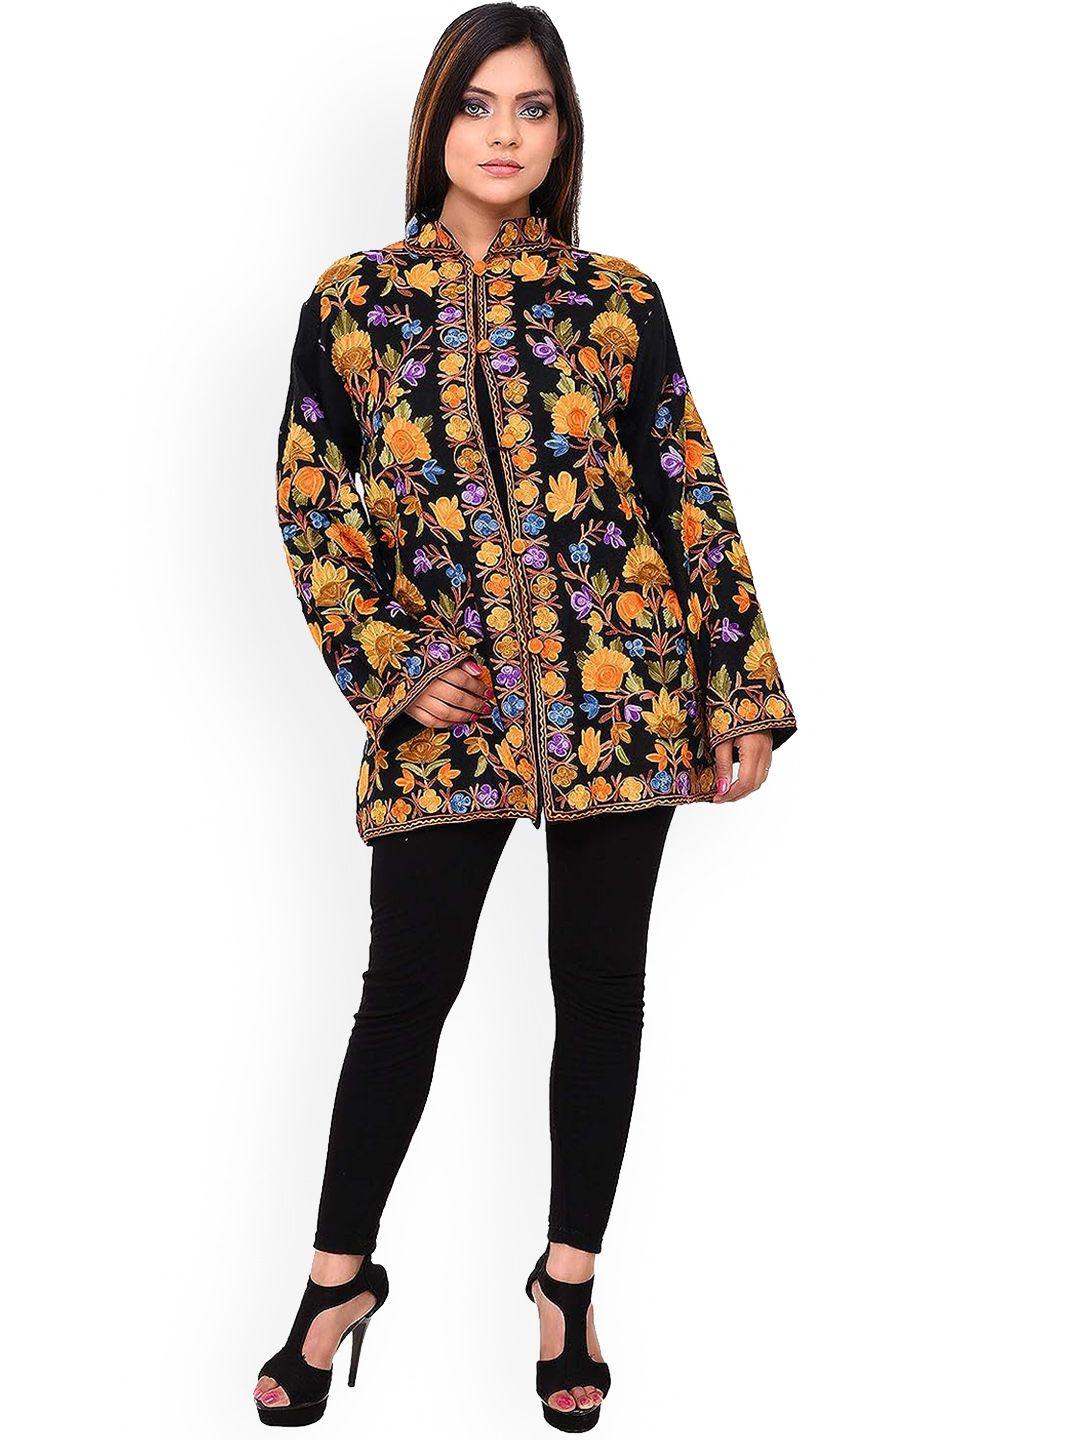 craftbazar women black floral woollen longline tailored jacket with embroidered